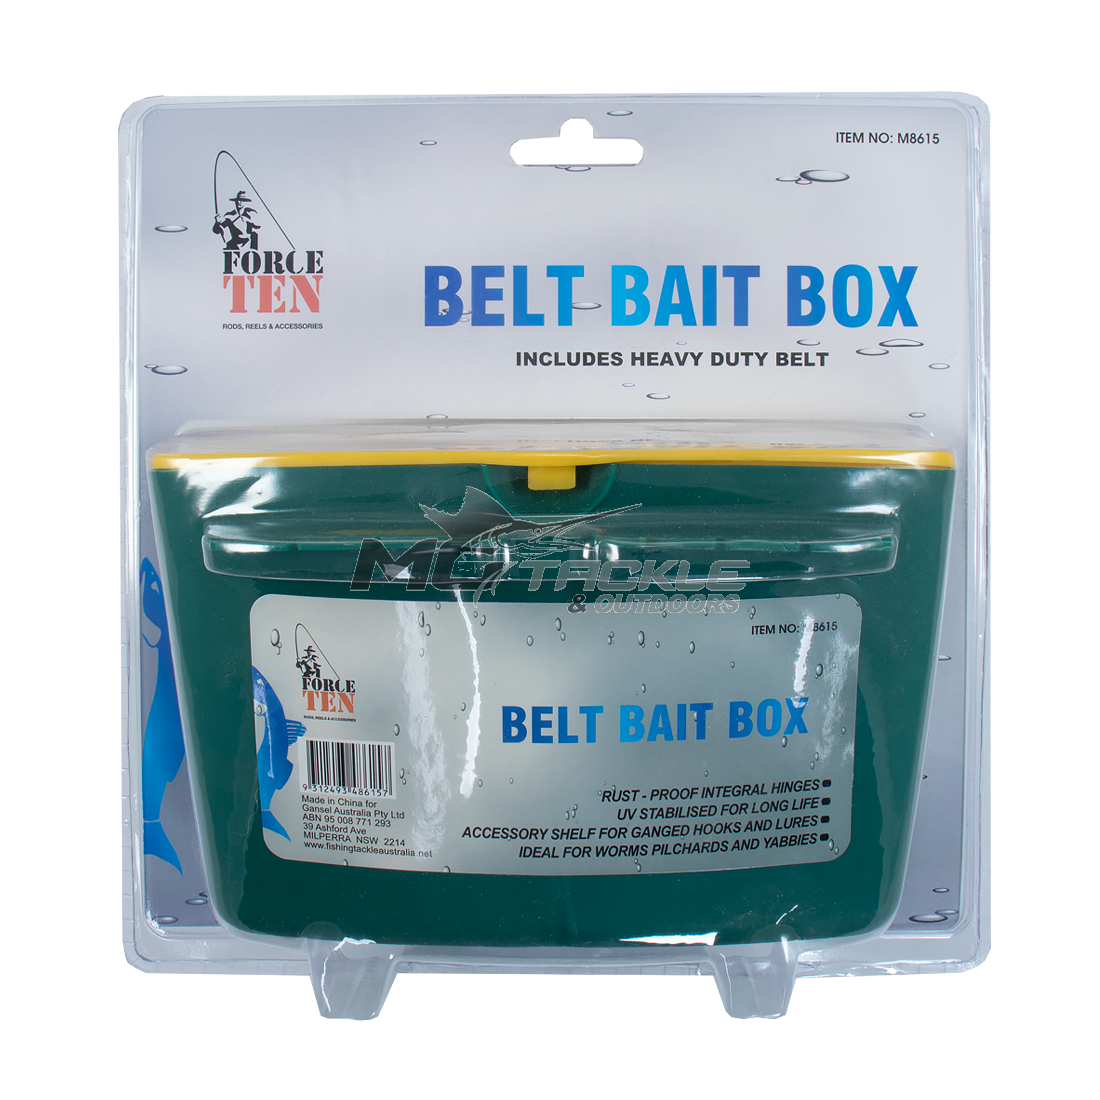 Force Ten Belt Bait Box